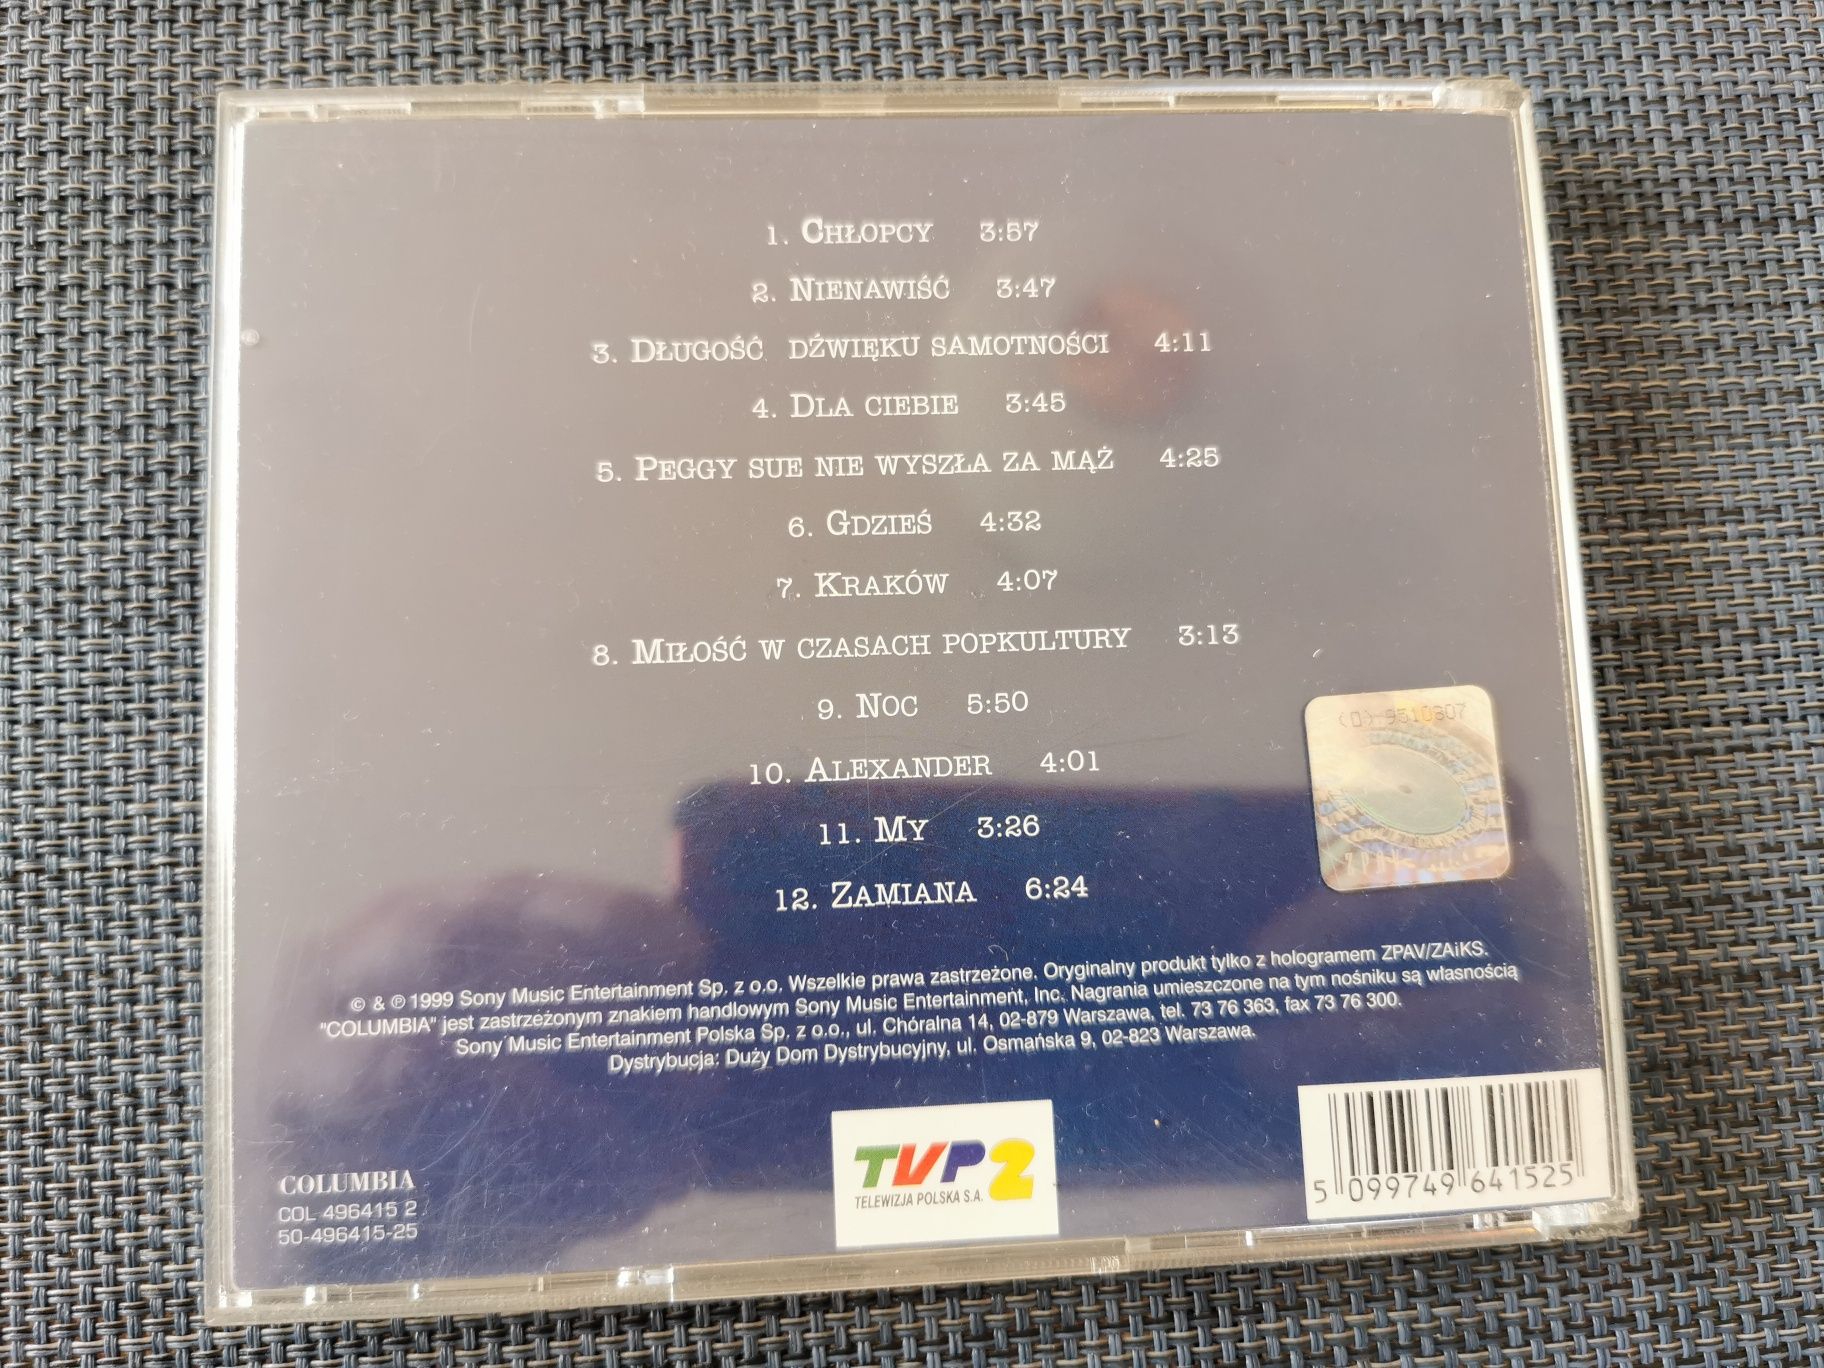 Myslovitz - "Miłość w czasach popkultury" - płyta CD